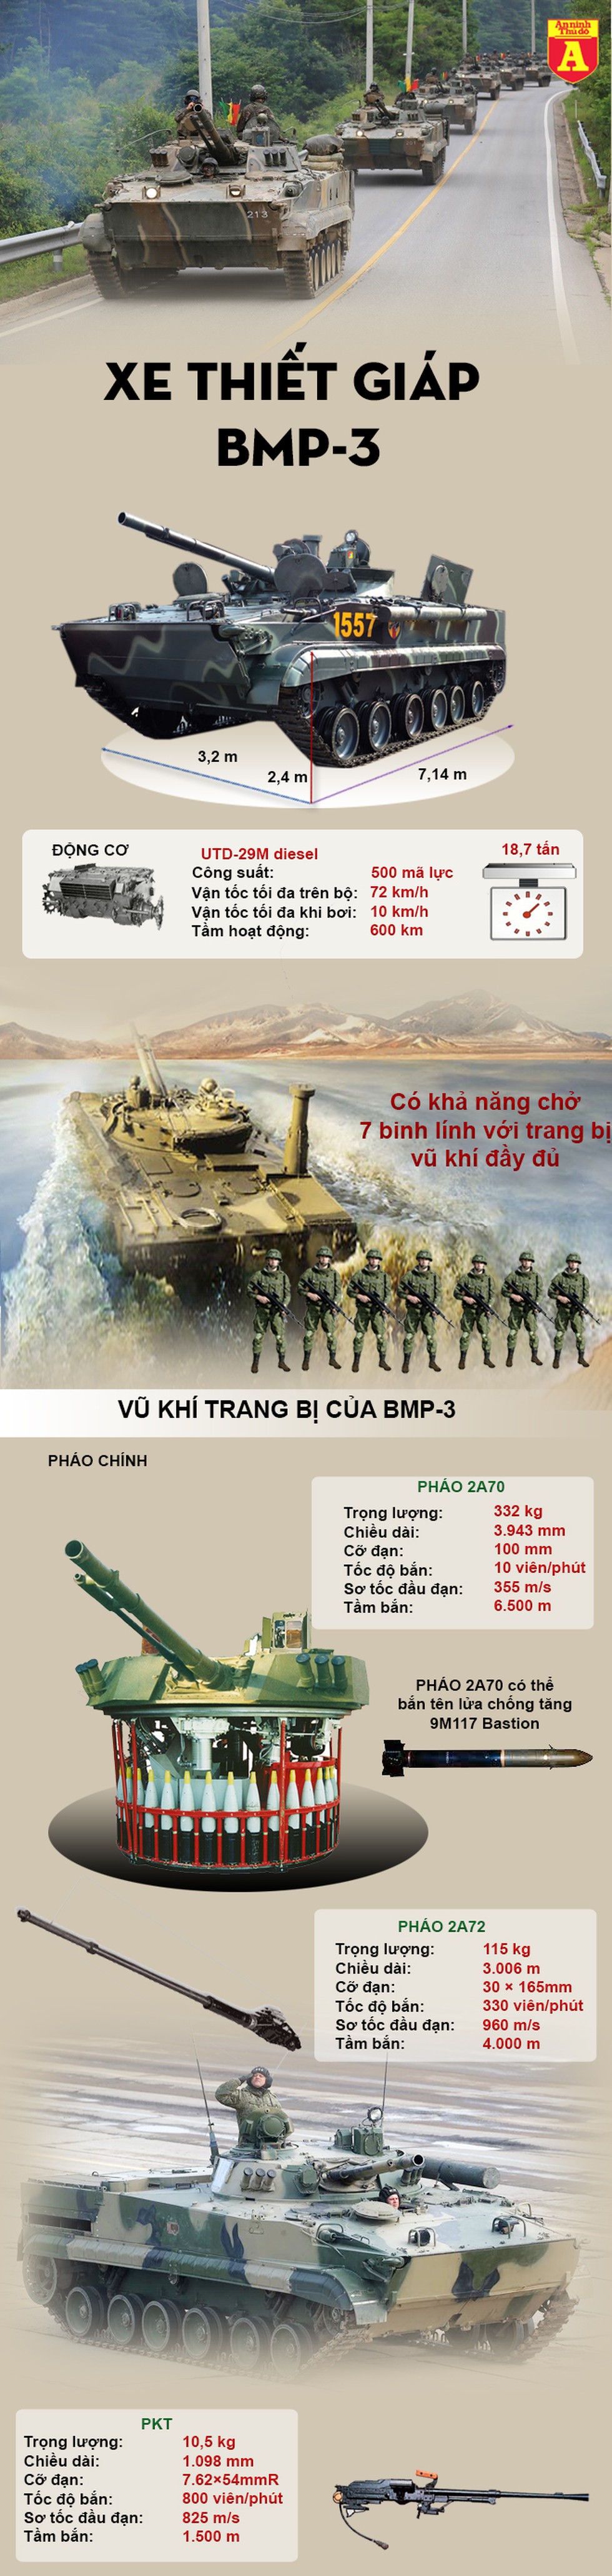 [Infographic] Ngoài T-80, Hàn Quốc còn được Nga "gán nợ" 70 chiếc BMP-3 - Ảnh 1